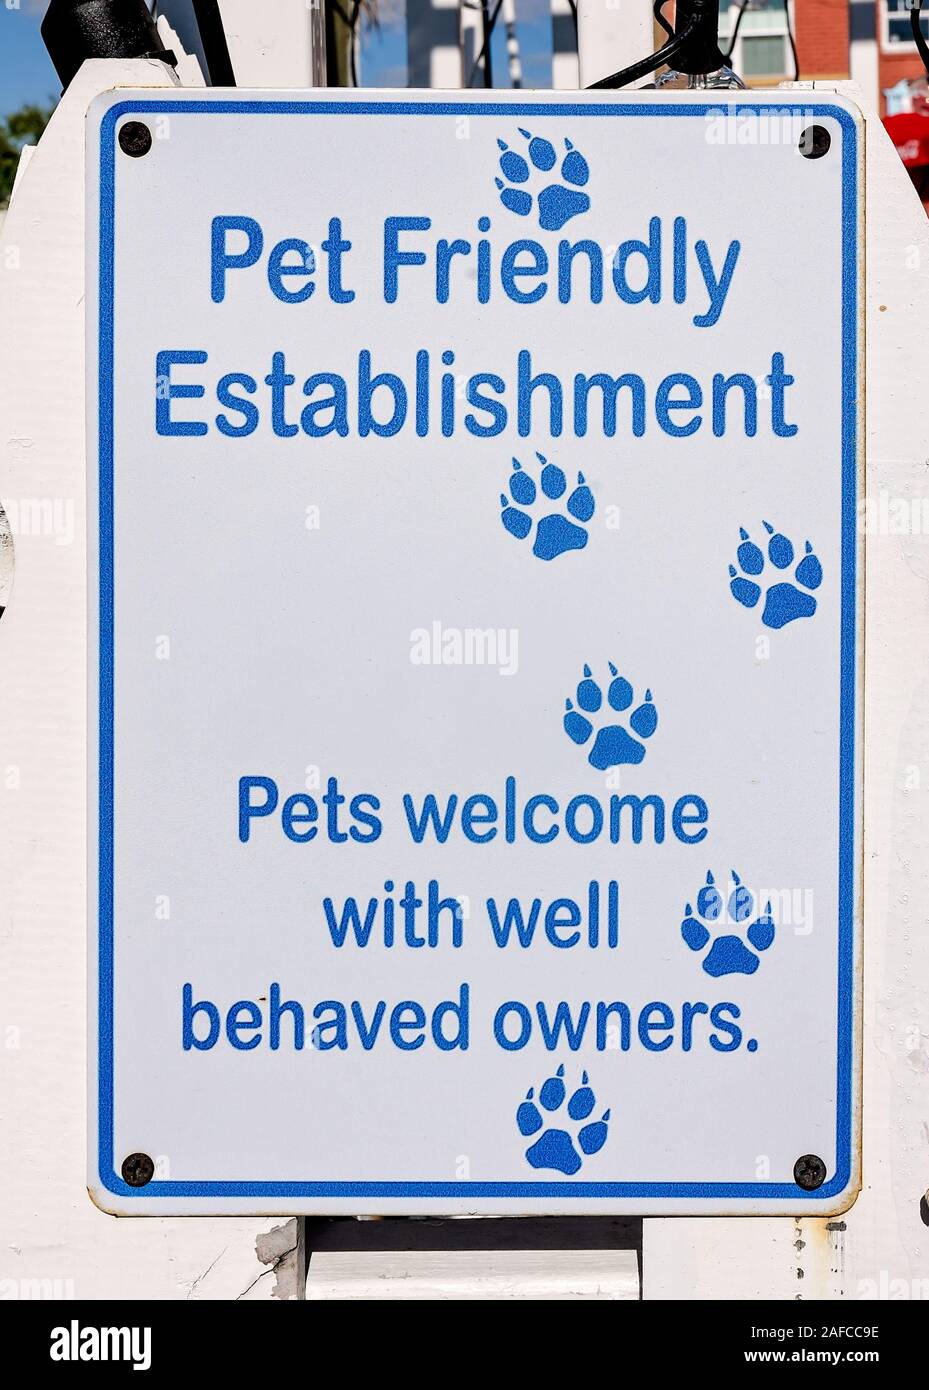 Un segno utilizza umorismo per informare i clienti che il business è pet-friendly, Sett. 22, 2019, in Port St. Joe, Florida. Foto Stock